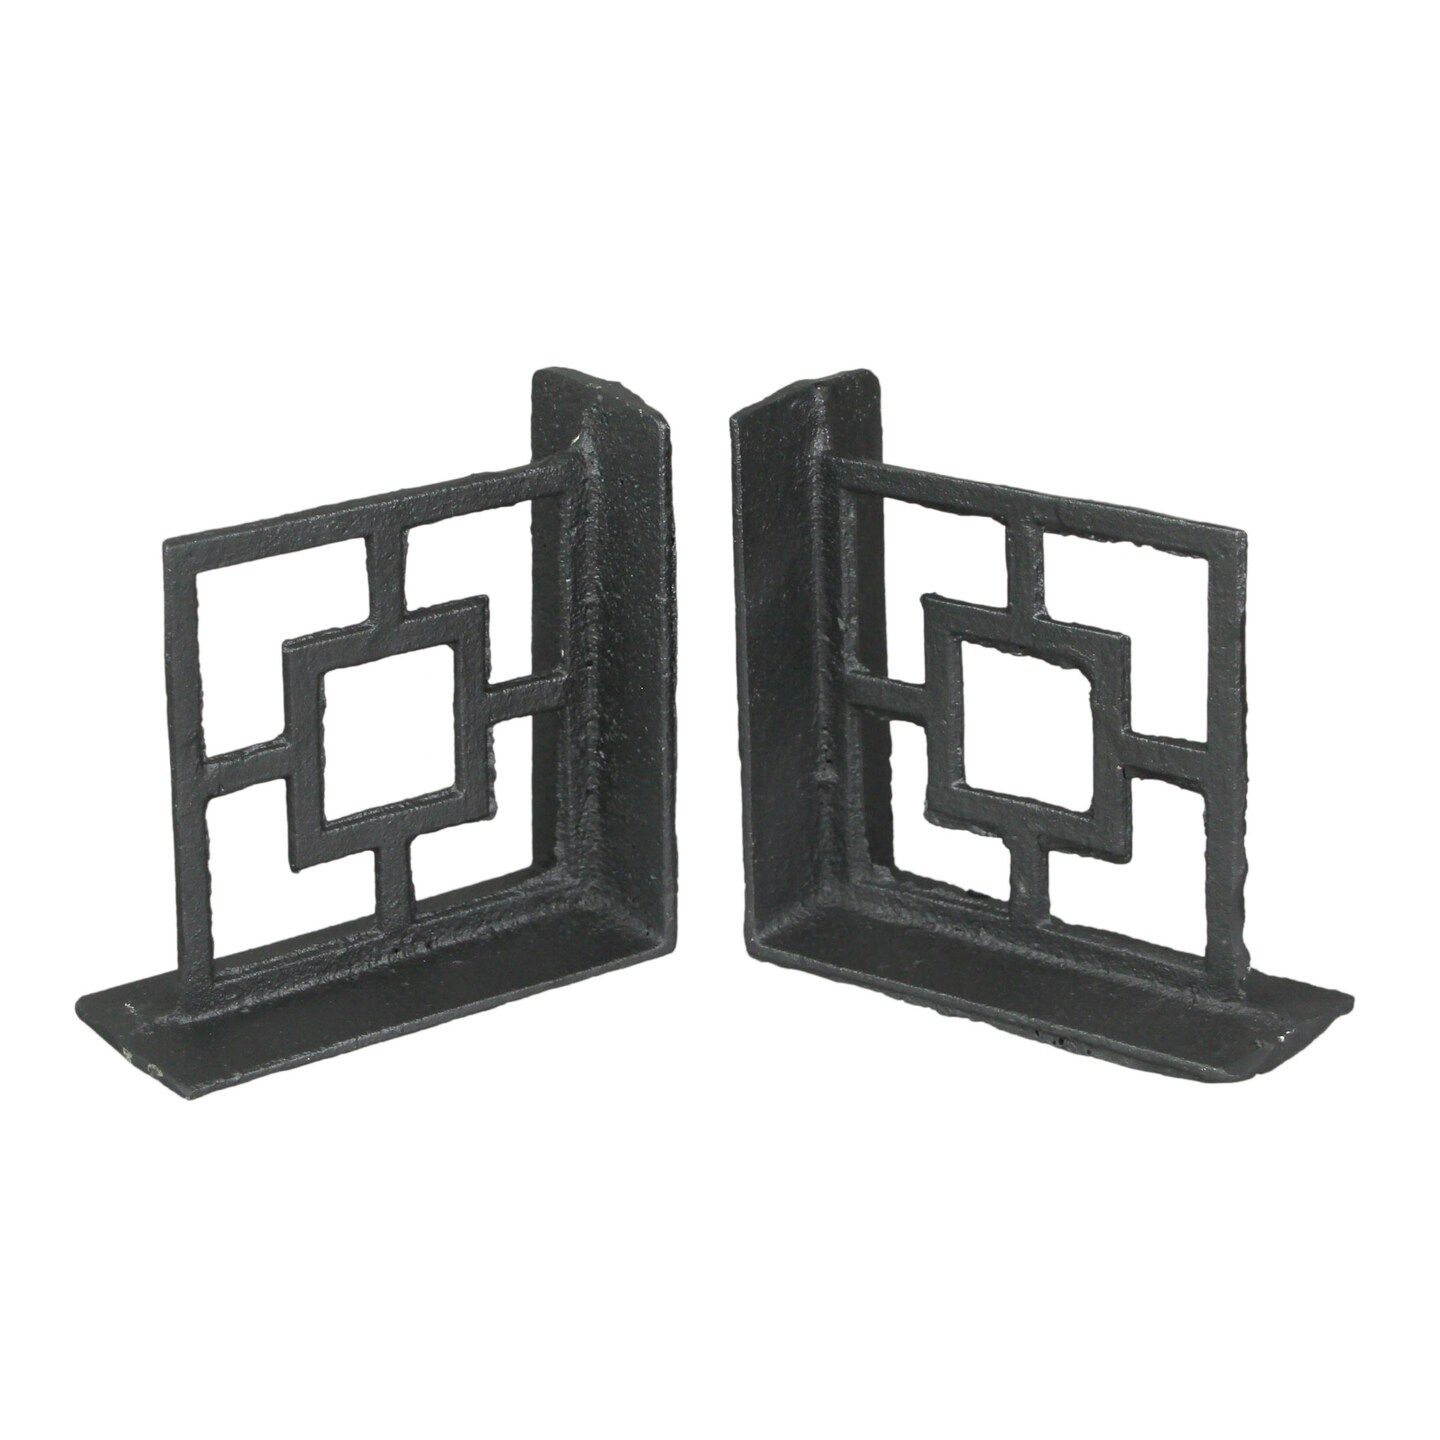 Set of 2 Cast Iron Breeze Block Bookends Decorative Rustic Geometric Shelf Decor